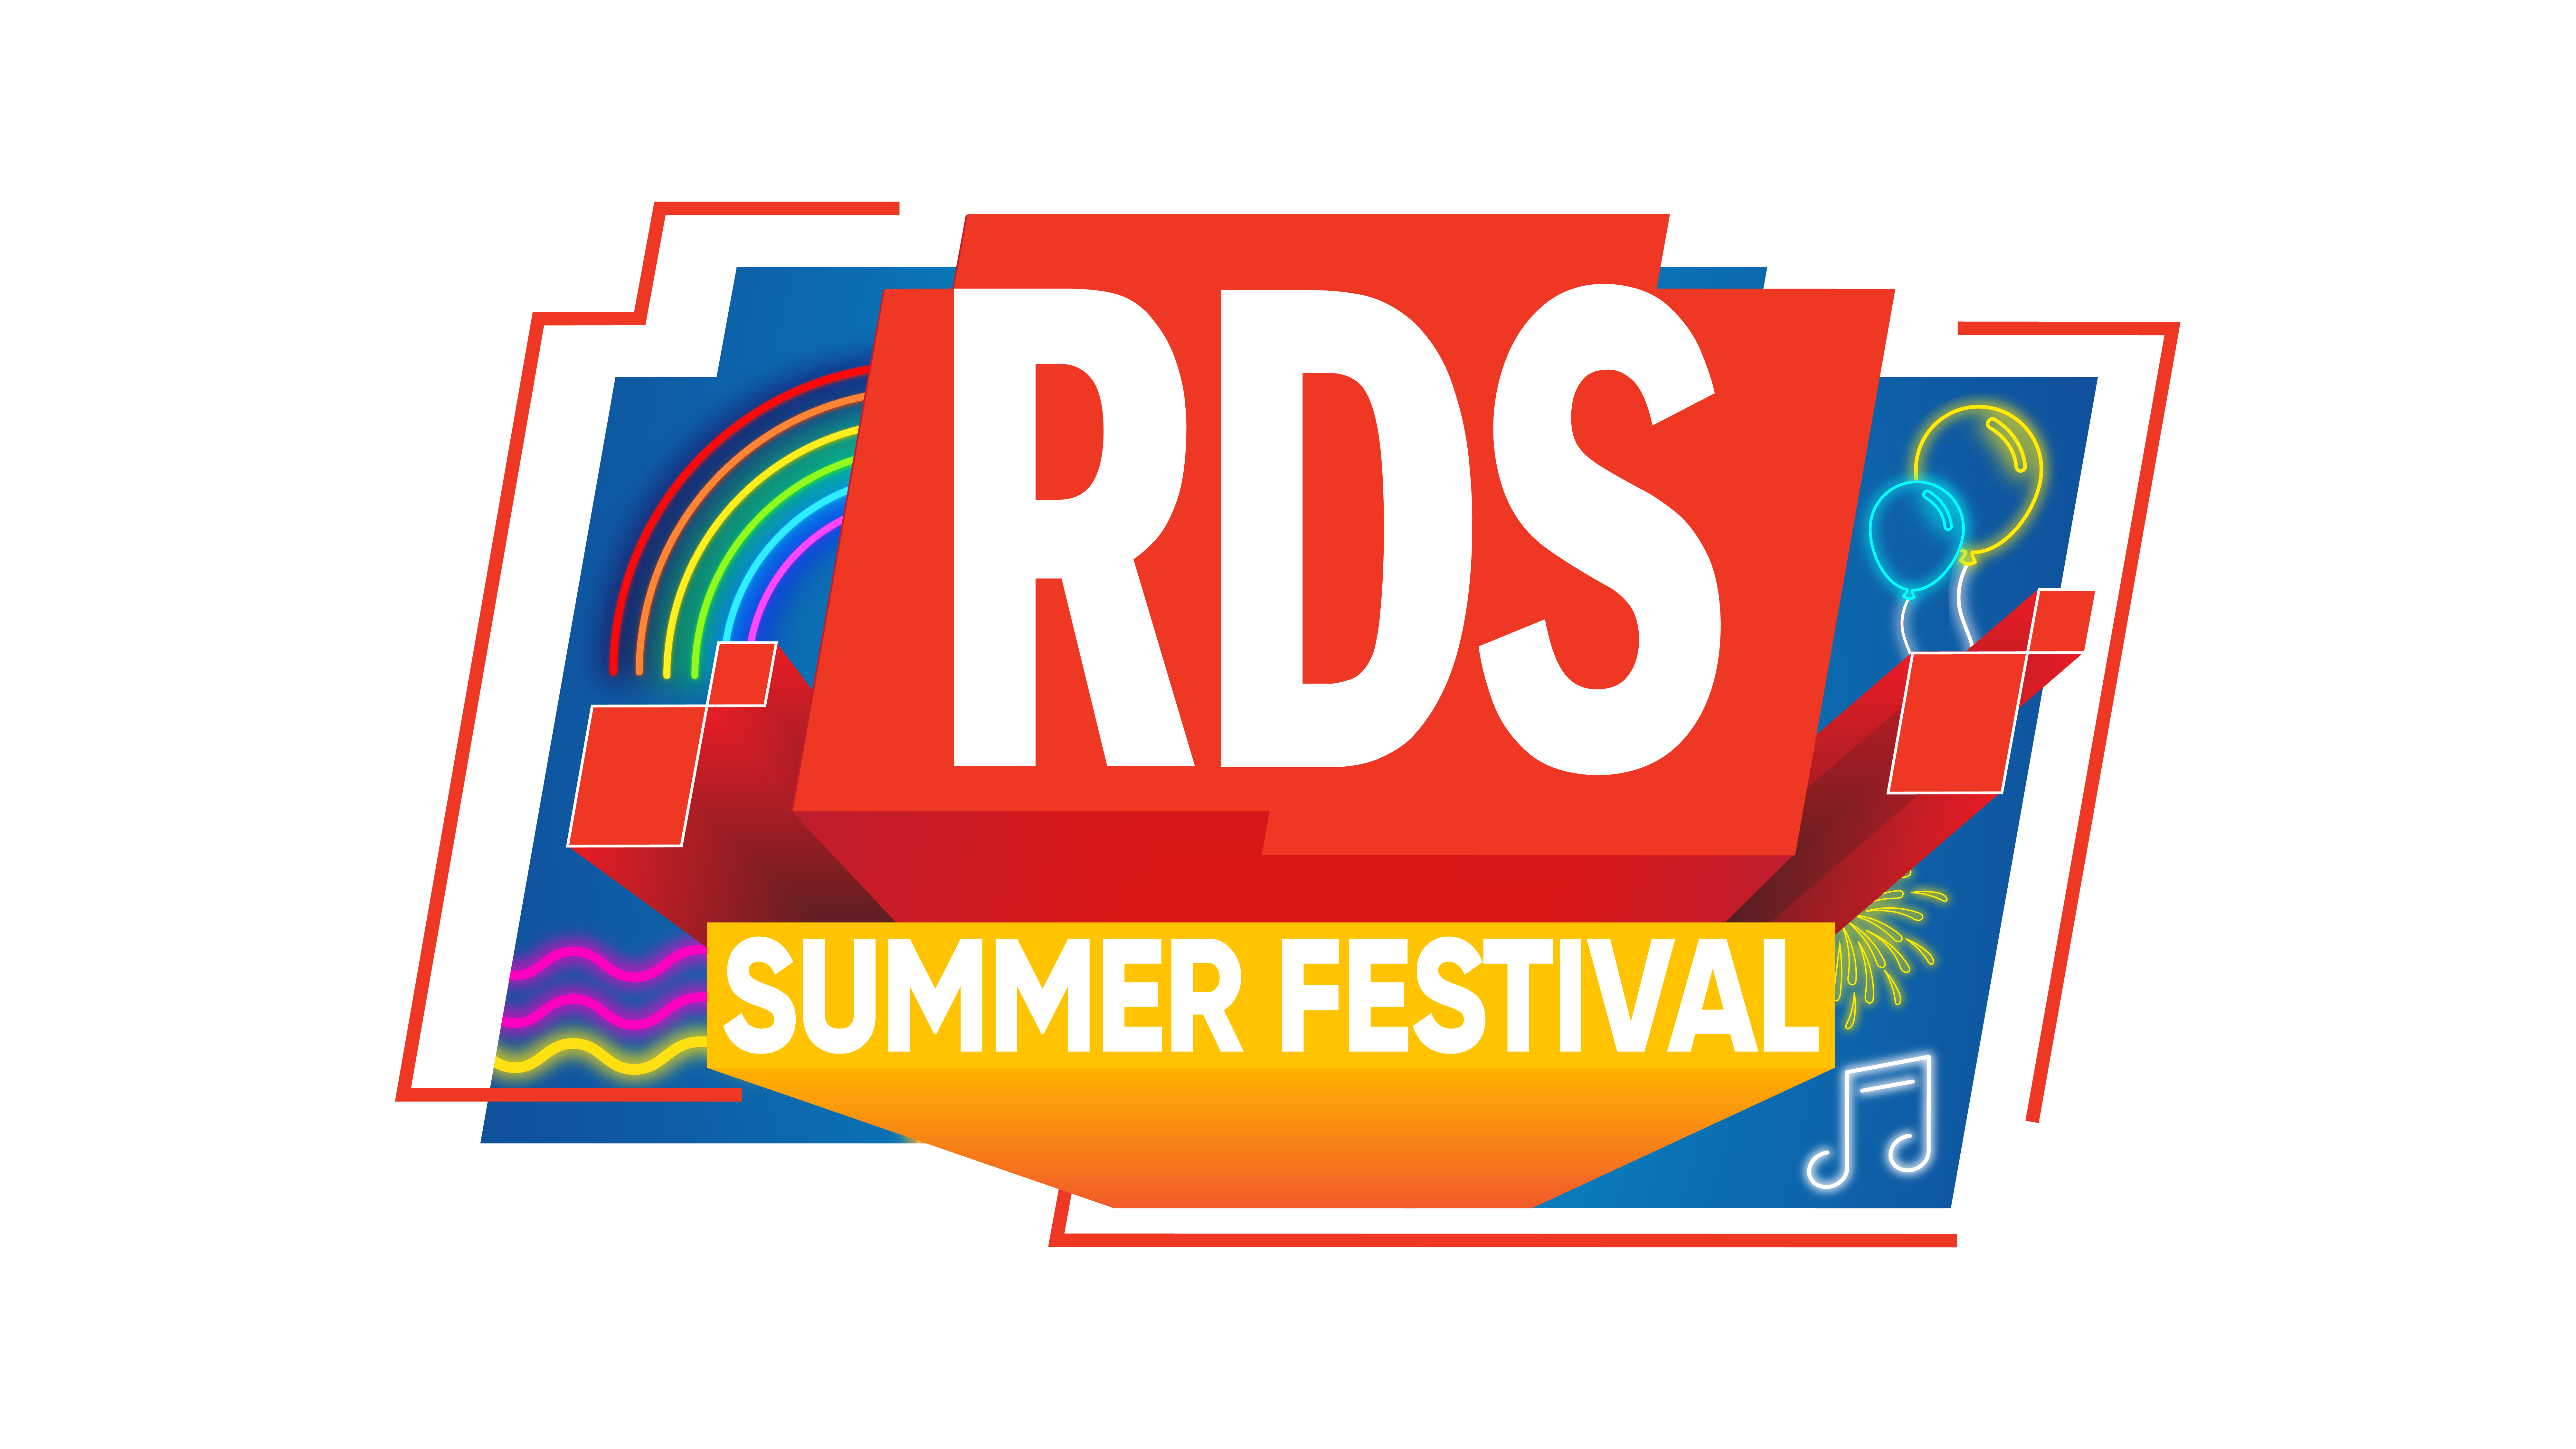 RDS Summer Festival torna a Messina il 12 e il 13 luglio a piazza Duomo 